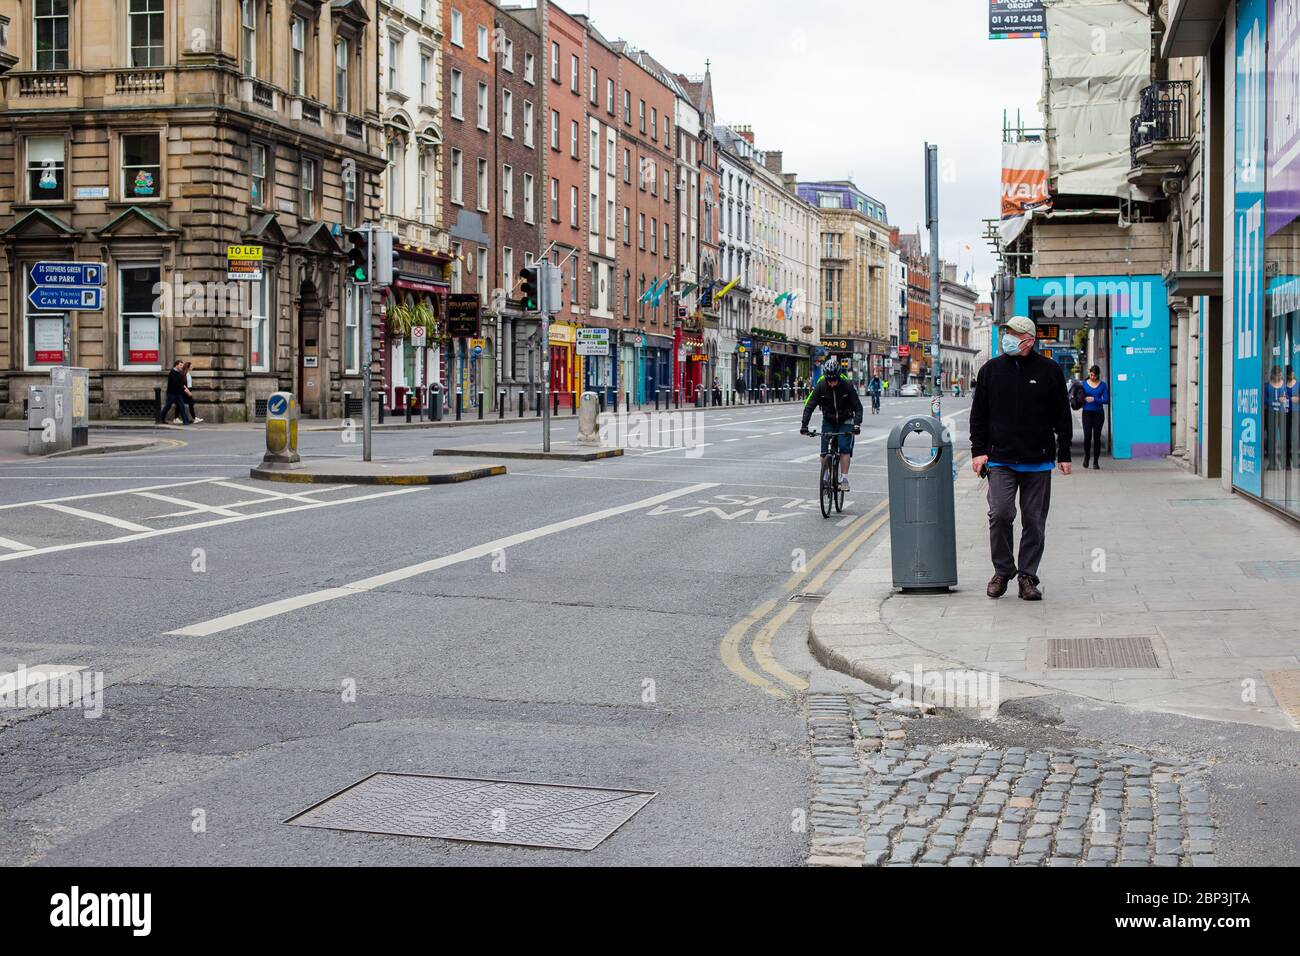 Calle Dama desierta en el centro de Dublín. Negocios cerrados y tráfico reducido debido a restricciones pandémicas de Coronavirus. Mayo de 2020, Dublín, Irlanda Foto de stock